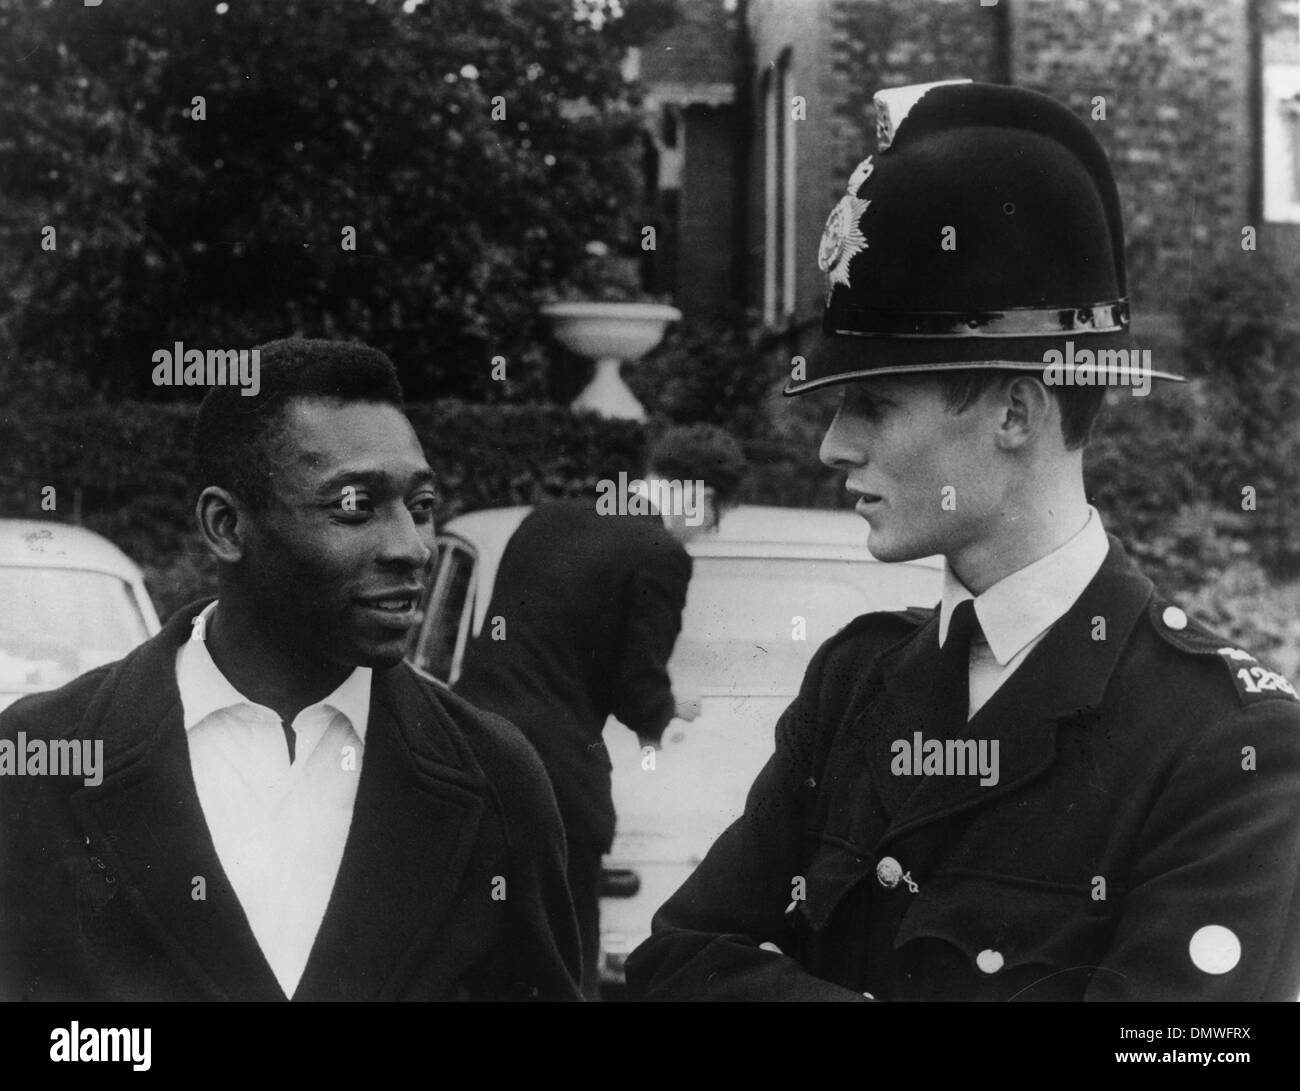 8 luglio 1966 - Londra, Inghilterra, Regno Unito - Brasiliano giocatore di calcio EDSON NASCIMENTO 'PELE' ha una conversazione con un poliziotto. (Credito Immagine: © Keystone Pictures USA/ZUMAPRESS.com) Foto Stock